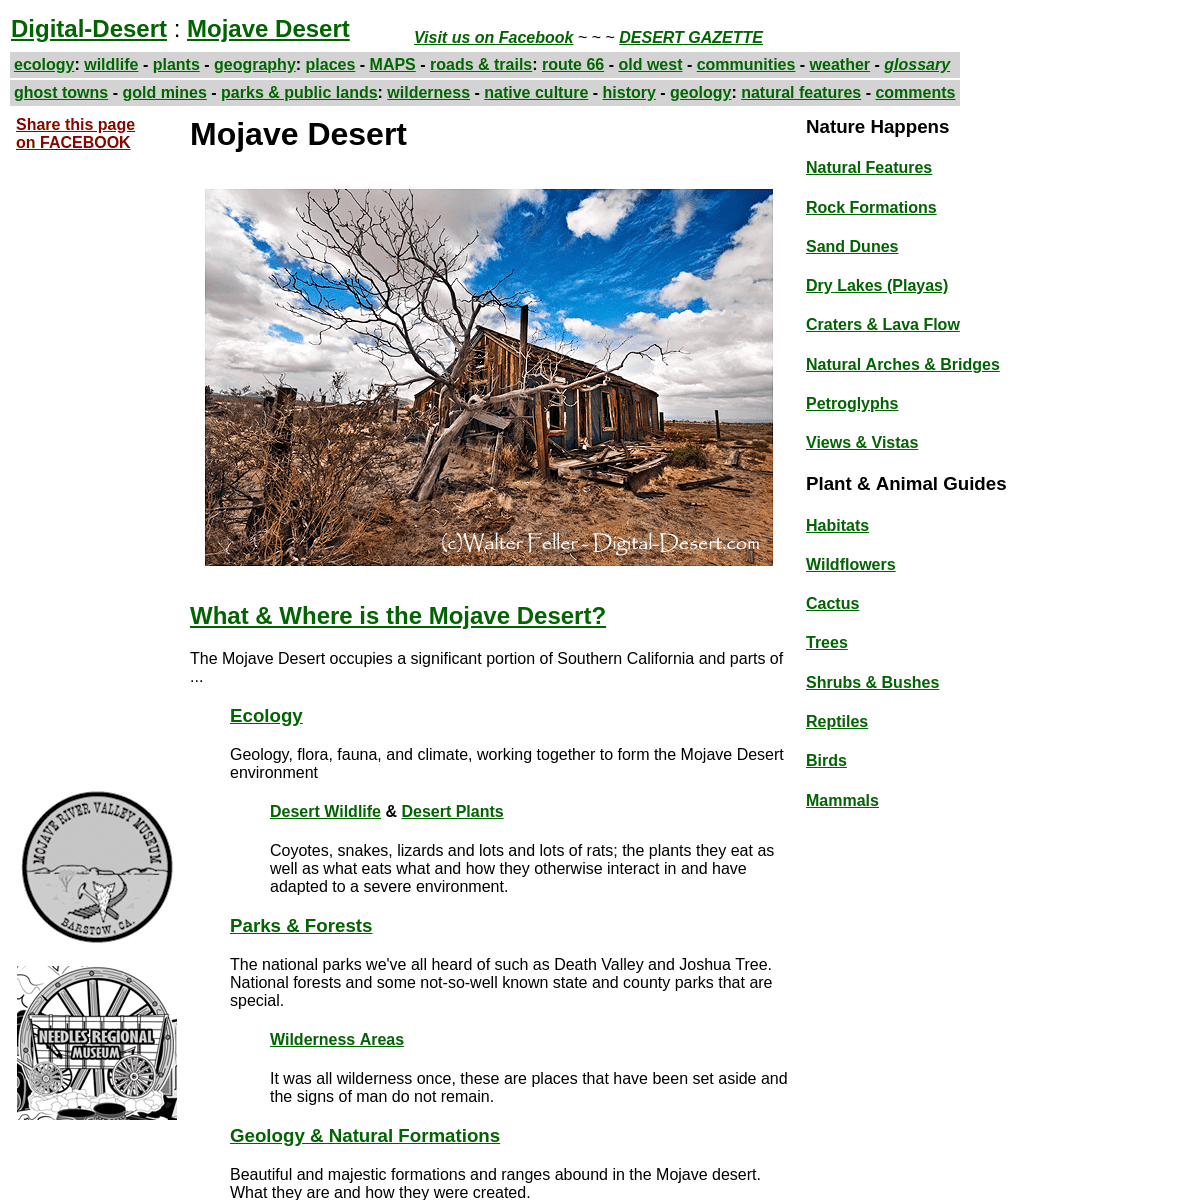 A complete backup of digital-desert.com